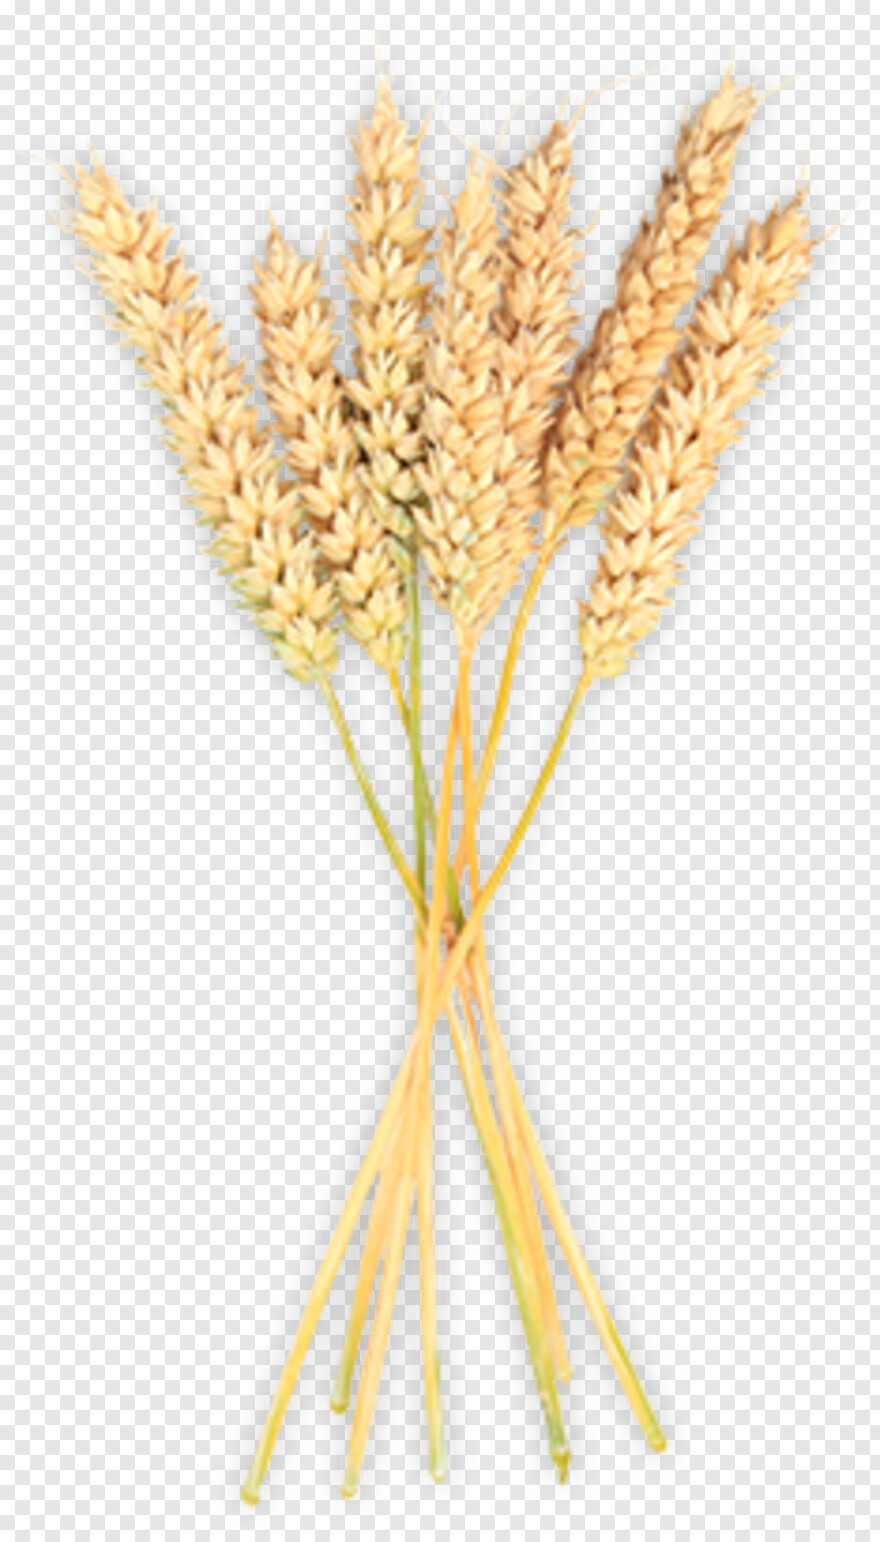 wheat-stalk # 801247